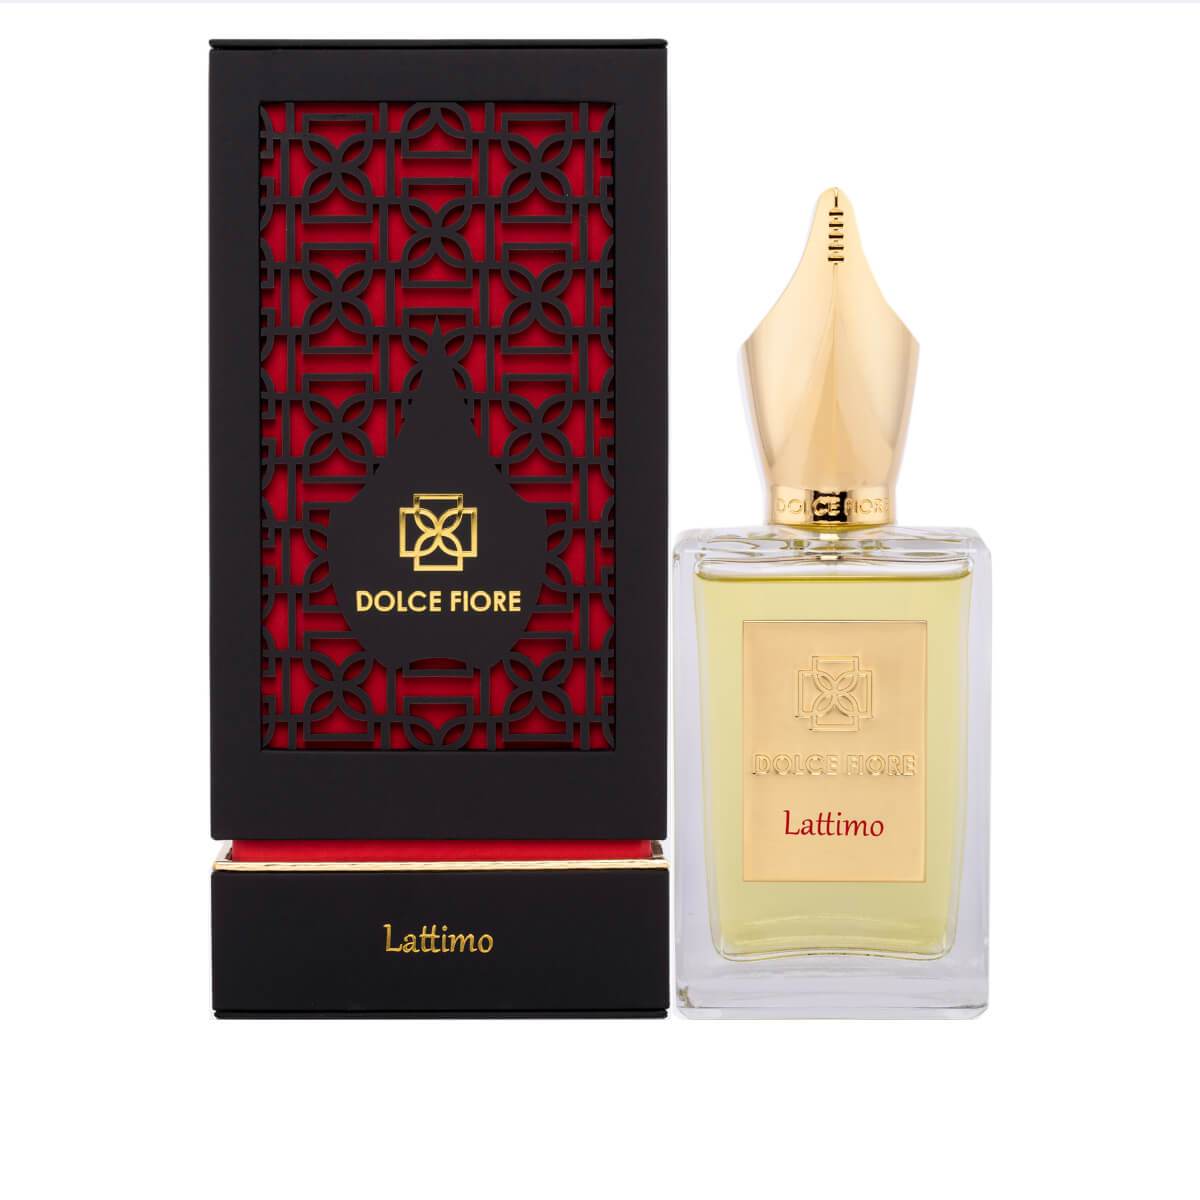 Dolce Fiore Lattimo 100 ML Eau De Parfum